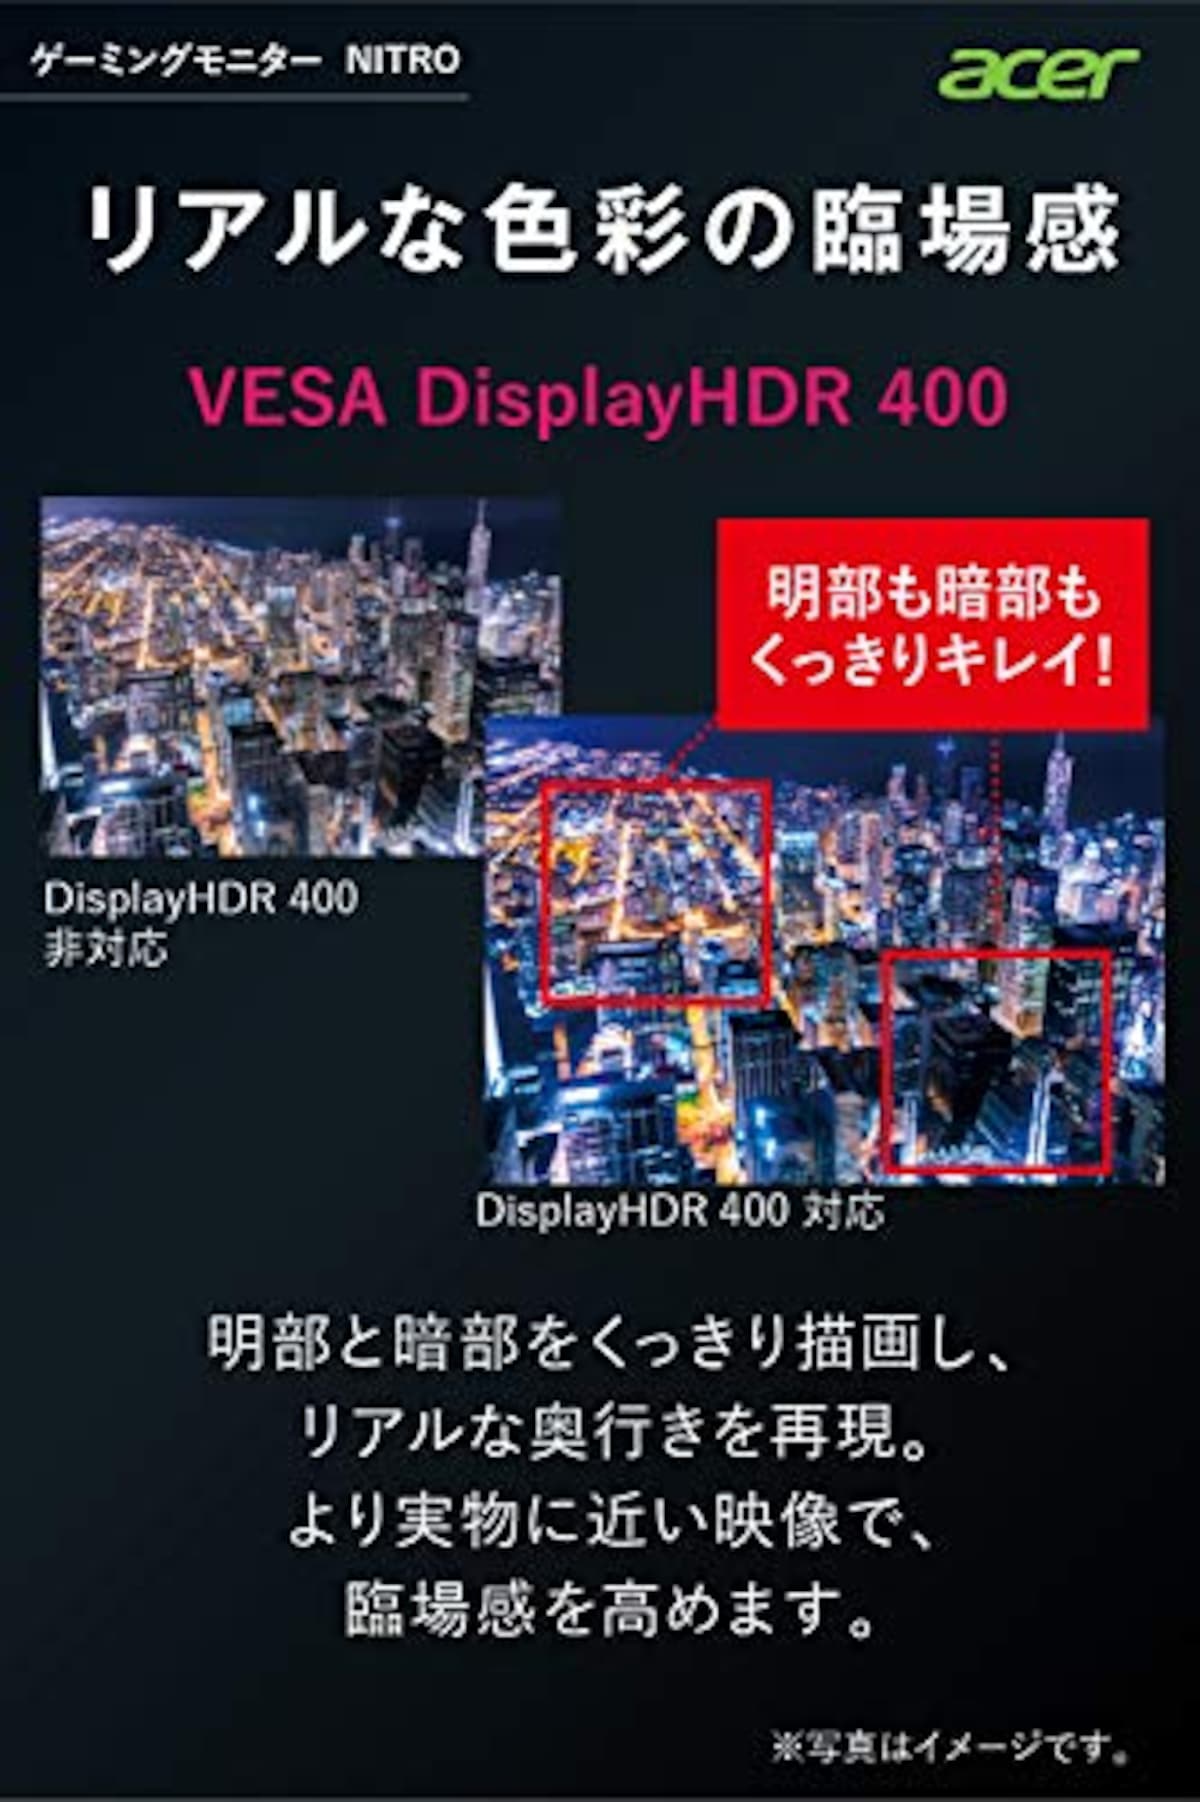  日本エイサー Acer ゲーミングモニター Nitro VG252QXbmiipx 24.5インチ IPS 非光沢 フルHD 0.5ms (GTG, Min.)240Hz HDMI G-SYNC Compatible VESA DisplayHDR™ 400 スピーカー内蔵 VESAマウント対応 チルト フリッカーレス ブルーライト軽減画像5 